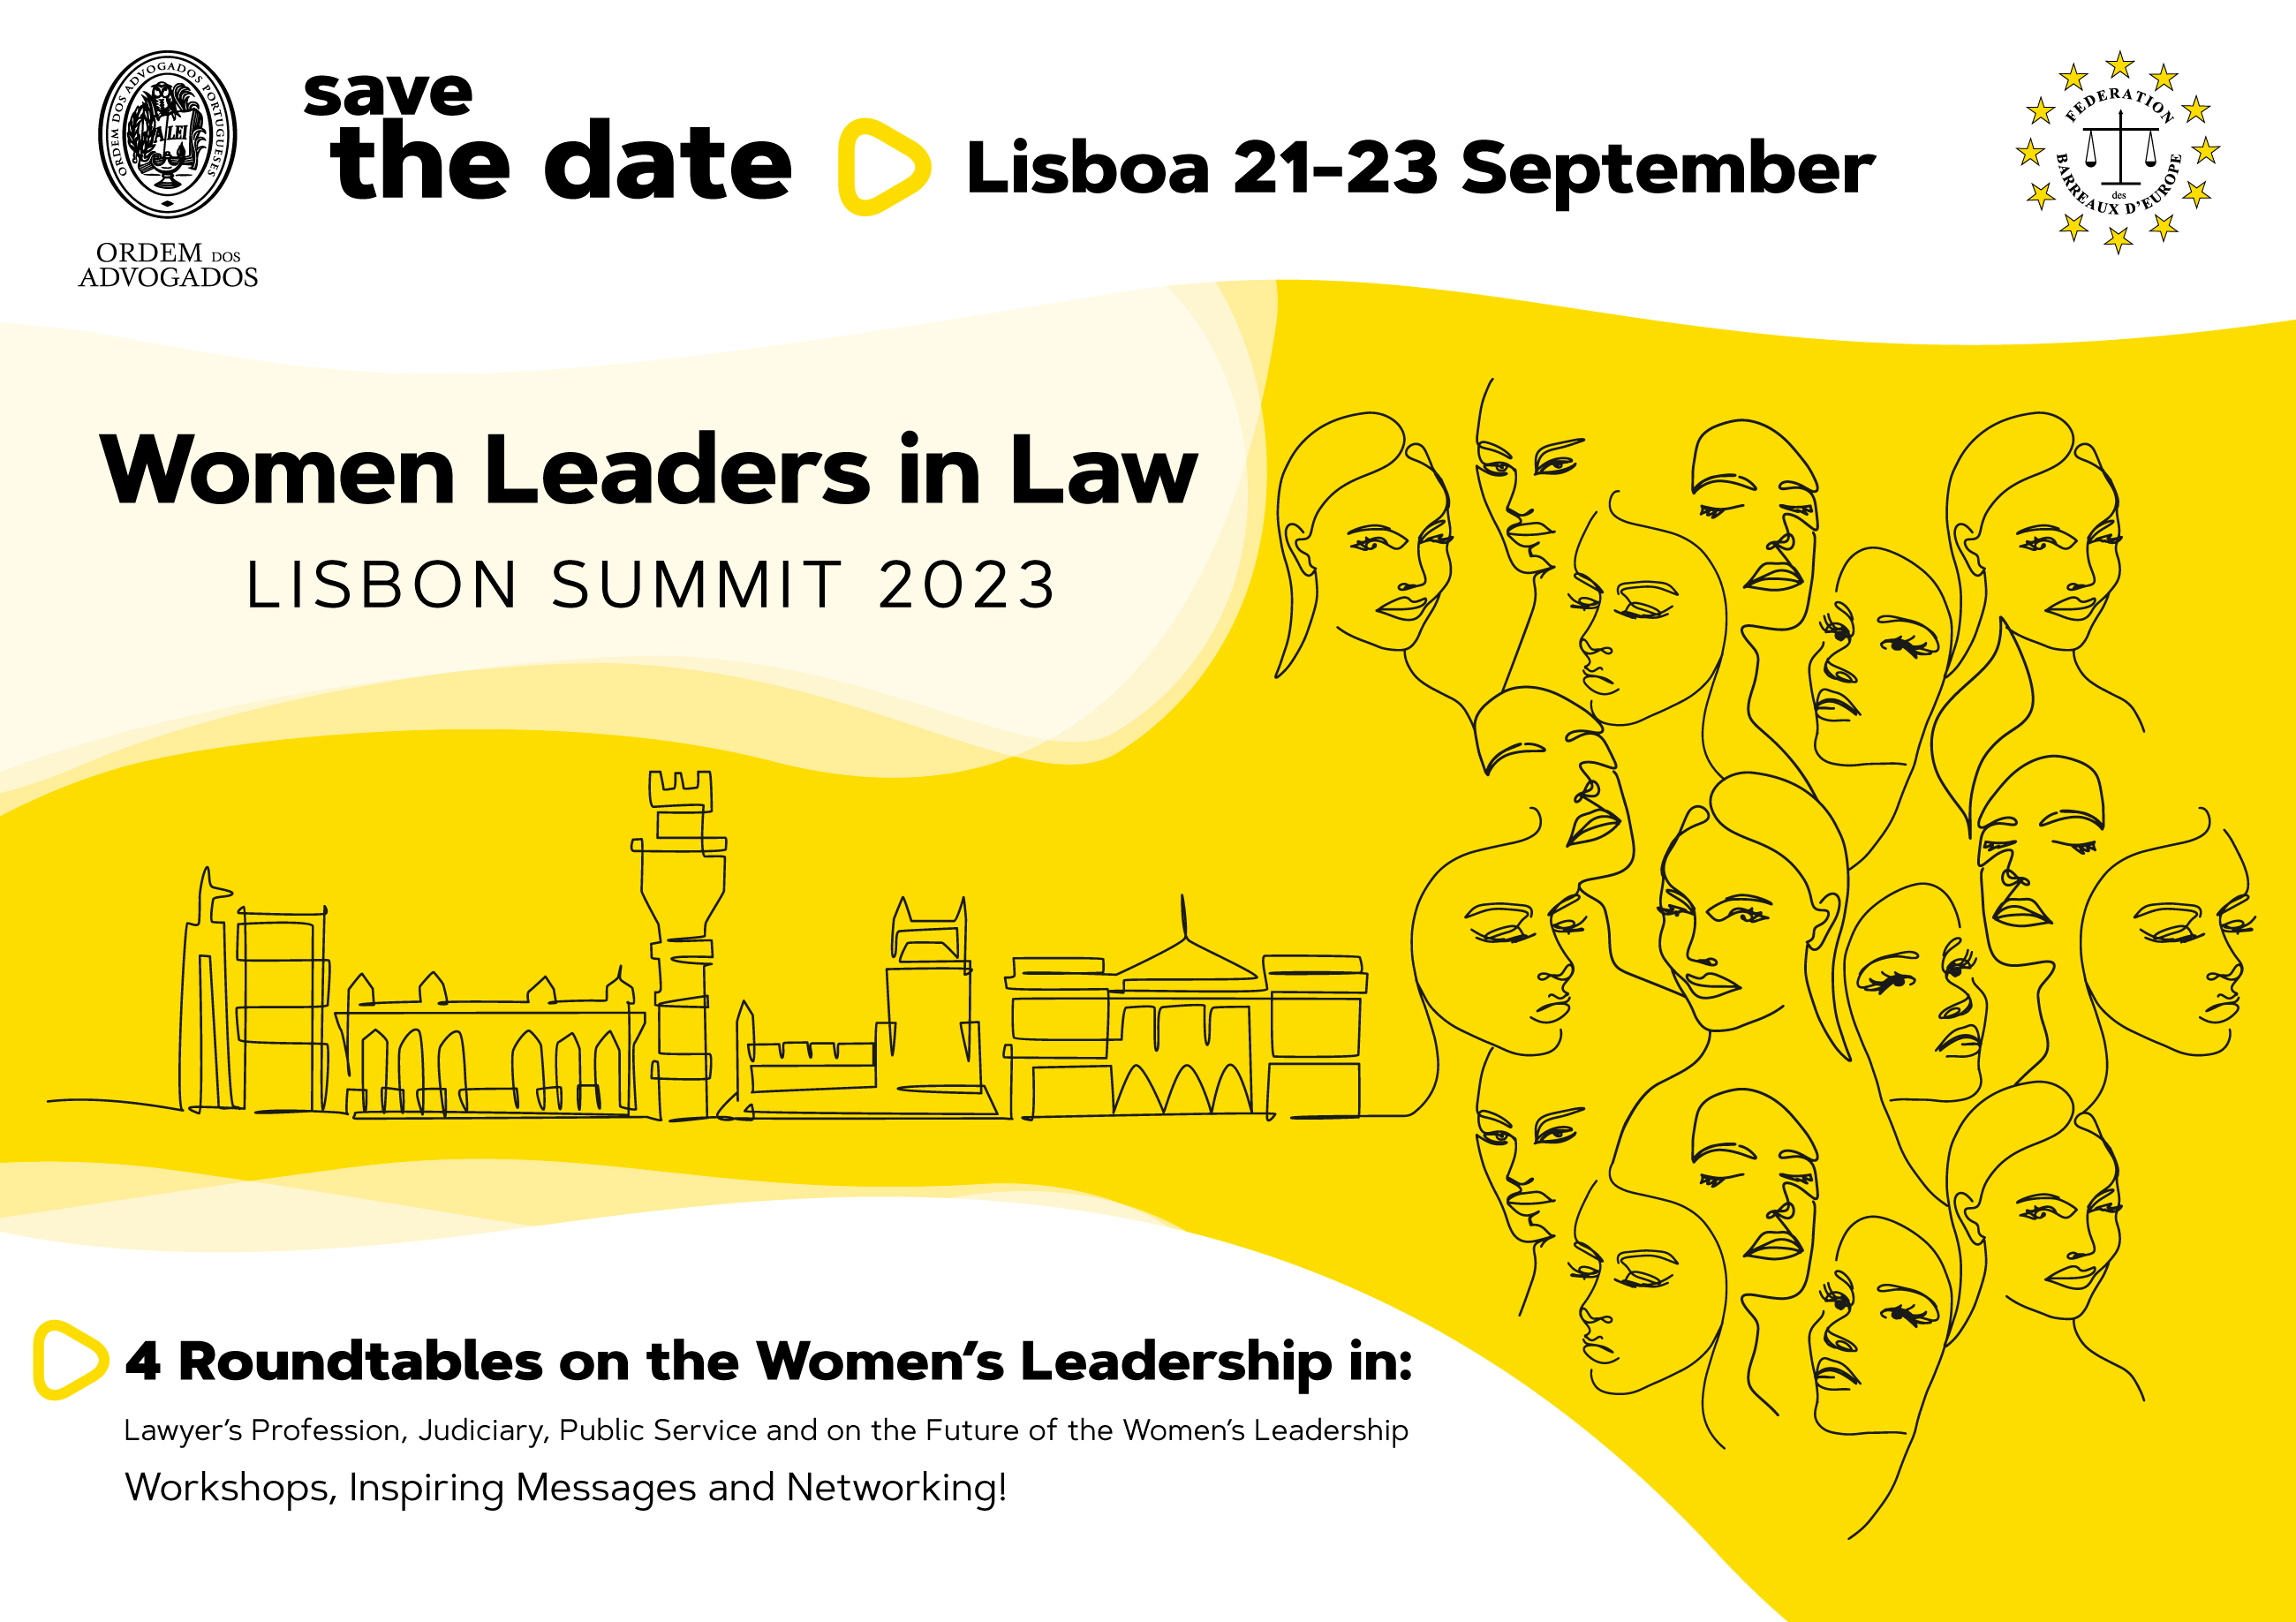 Zaproszenie do udziału w konferencji WOMEN LEADERS IN LAW w Lizbonie